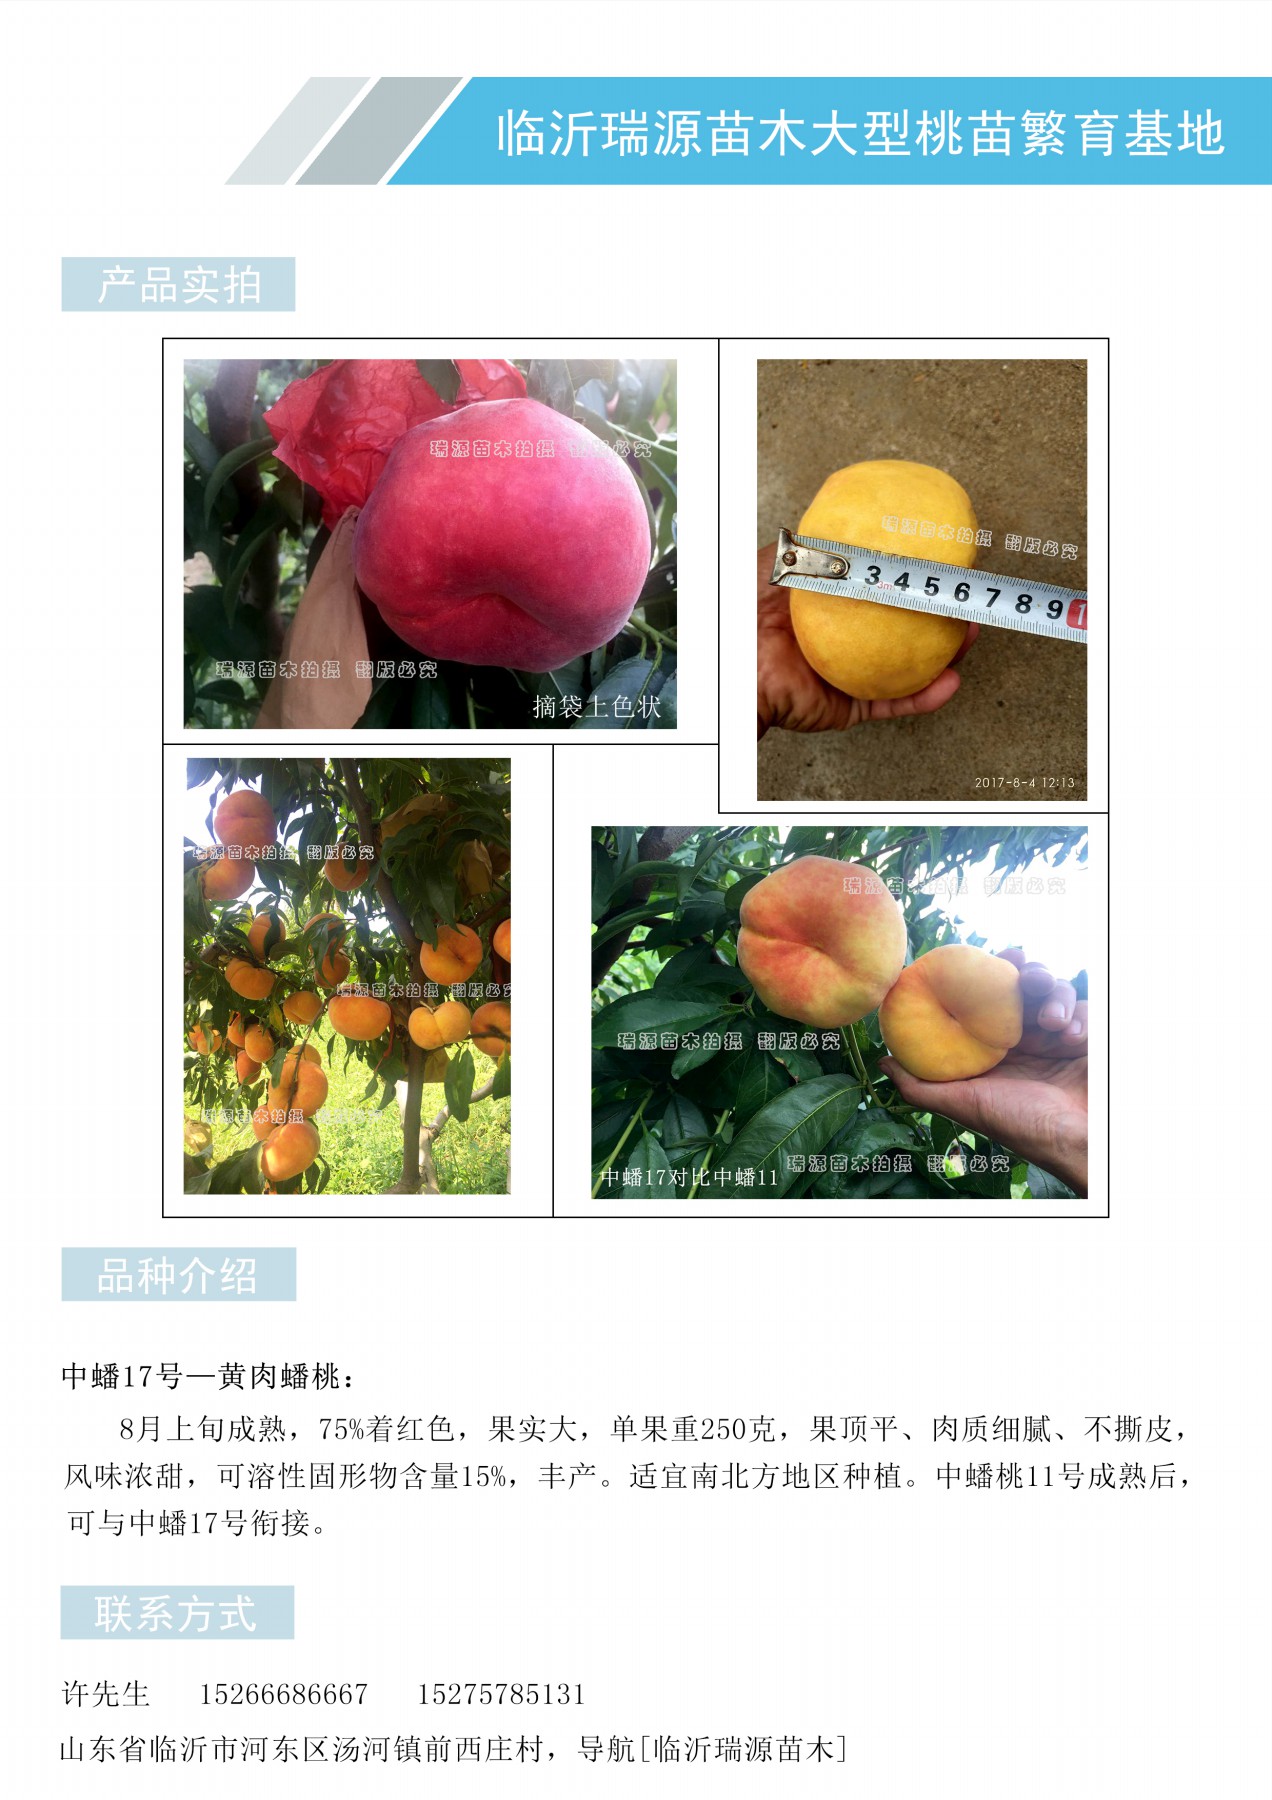 郑州果树研究所蟠桃新品种蟠桃是什么品种嫁接的